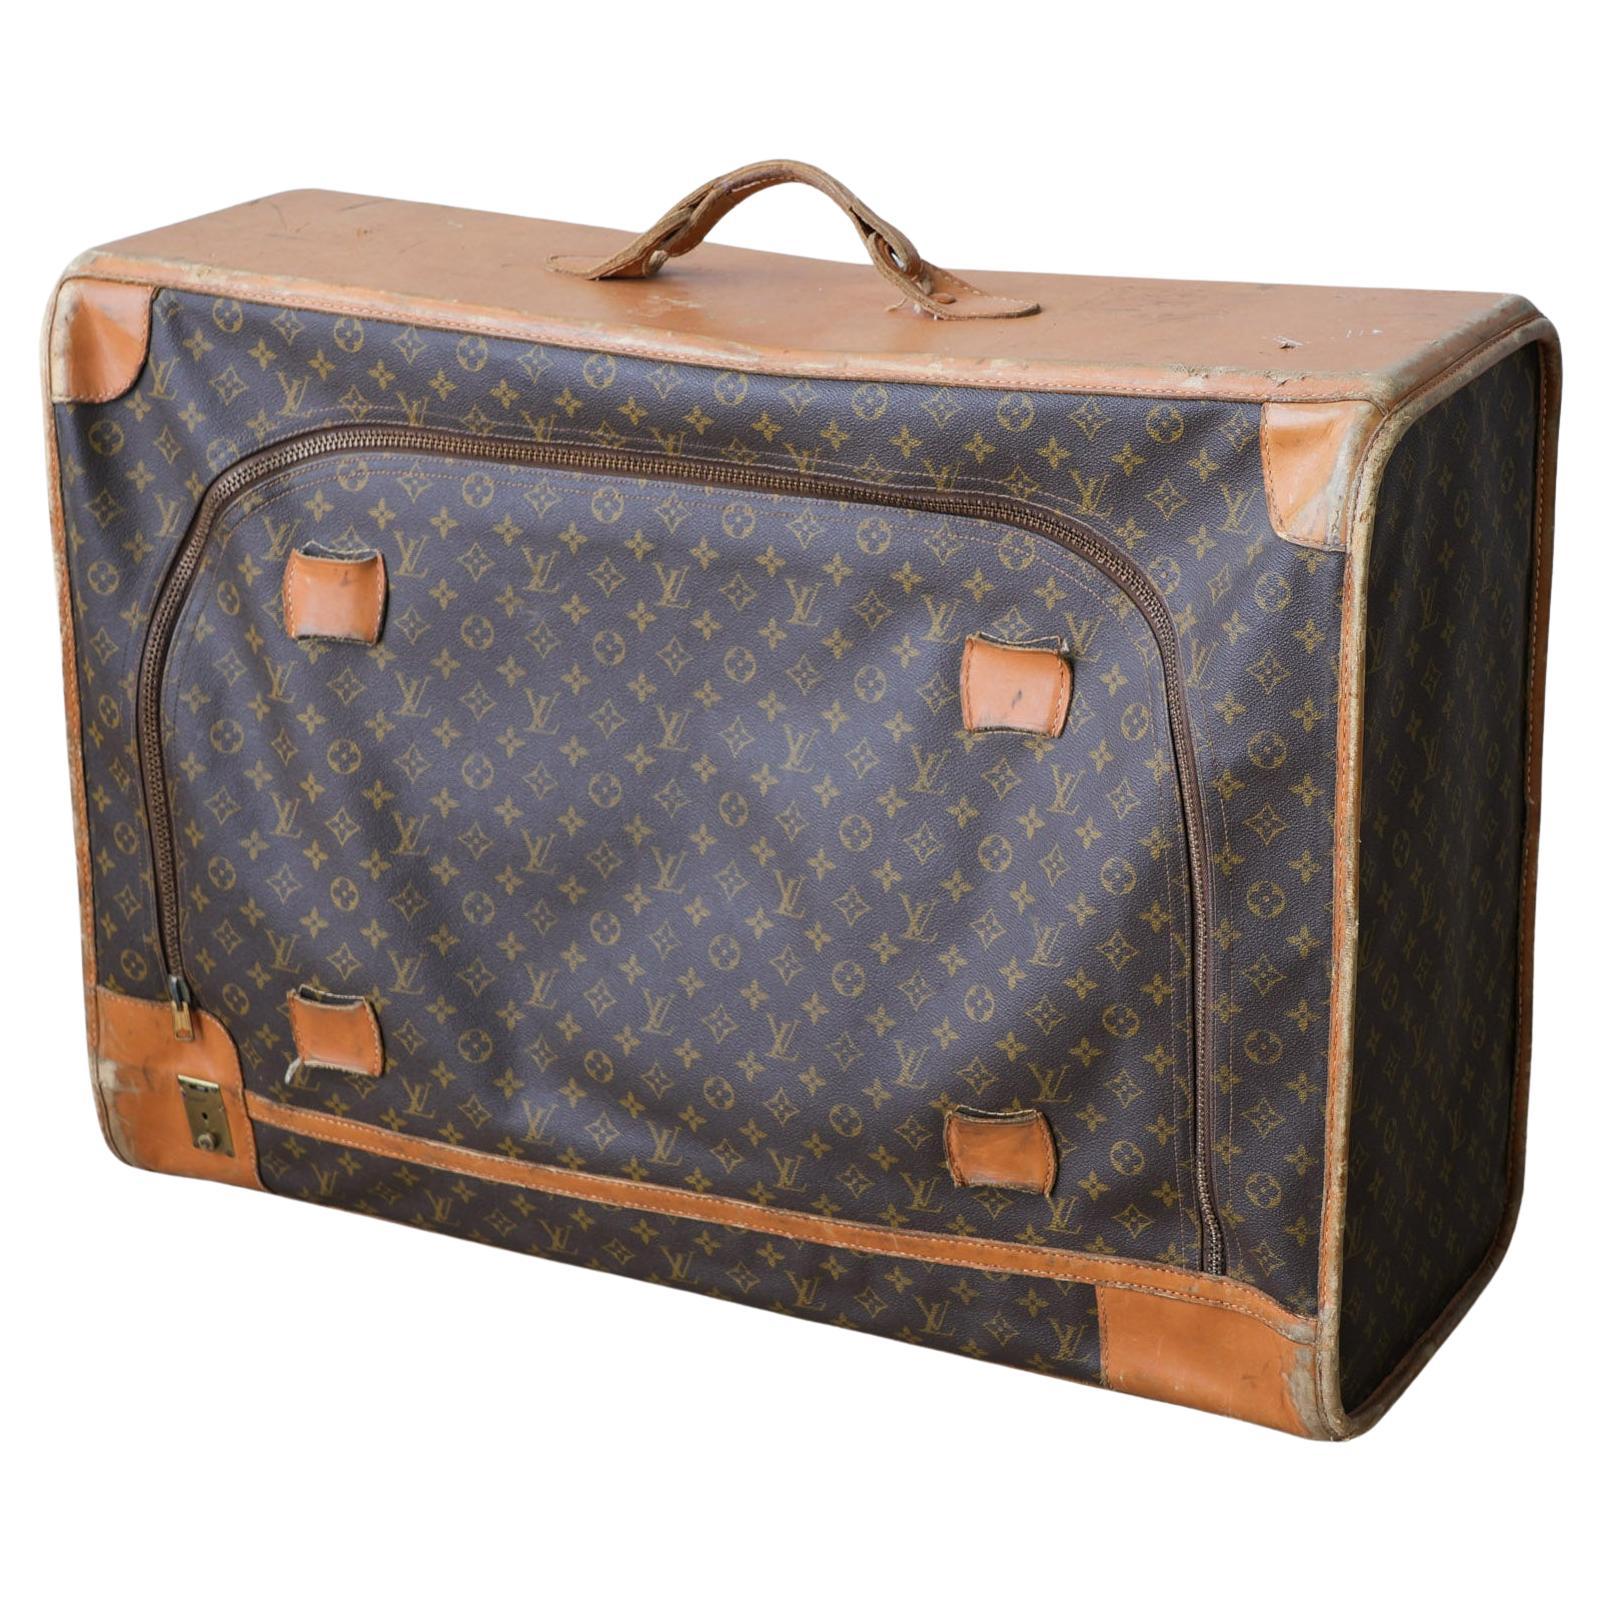 Original Louis Vuitton-Koffer aus den 1970er Jahren